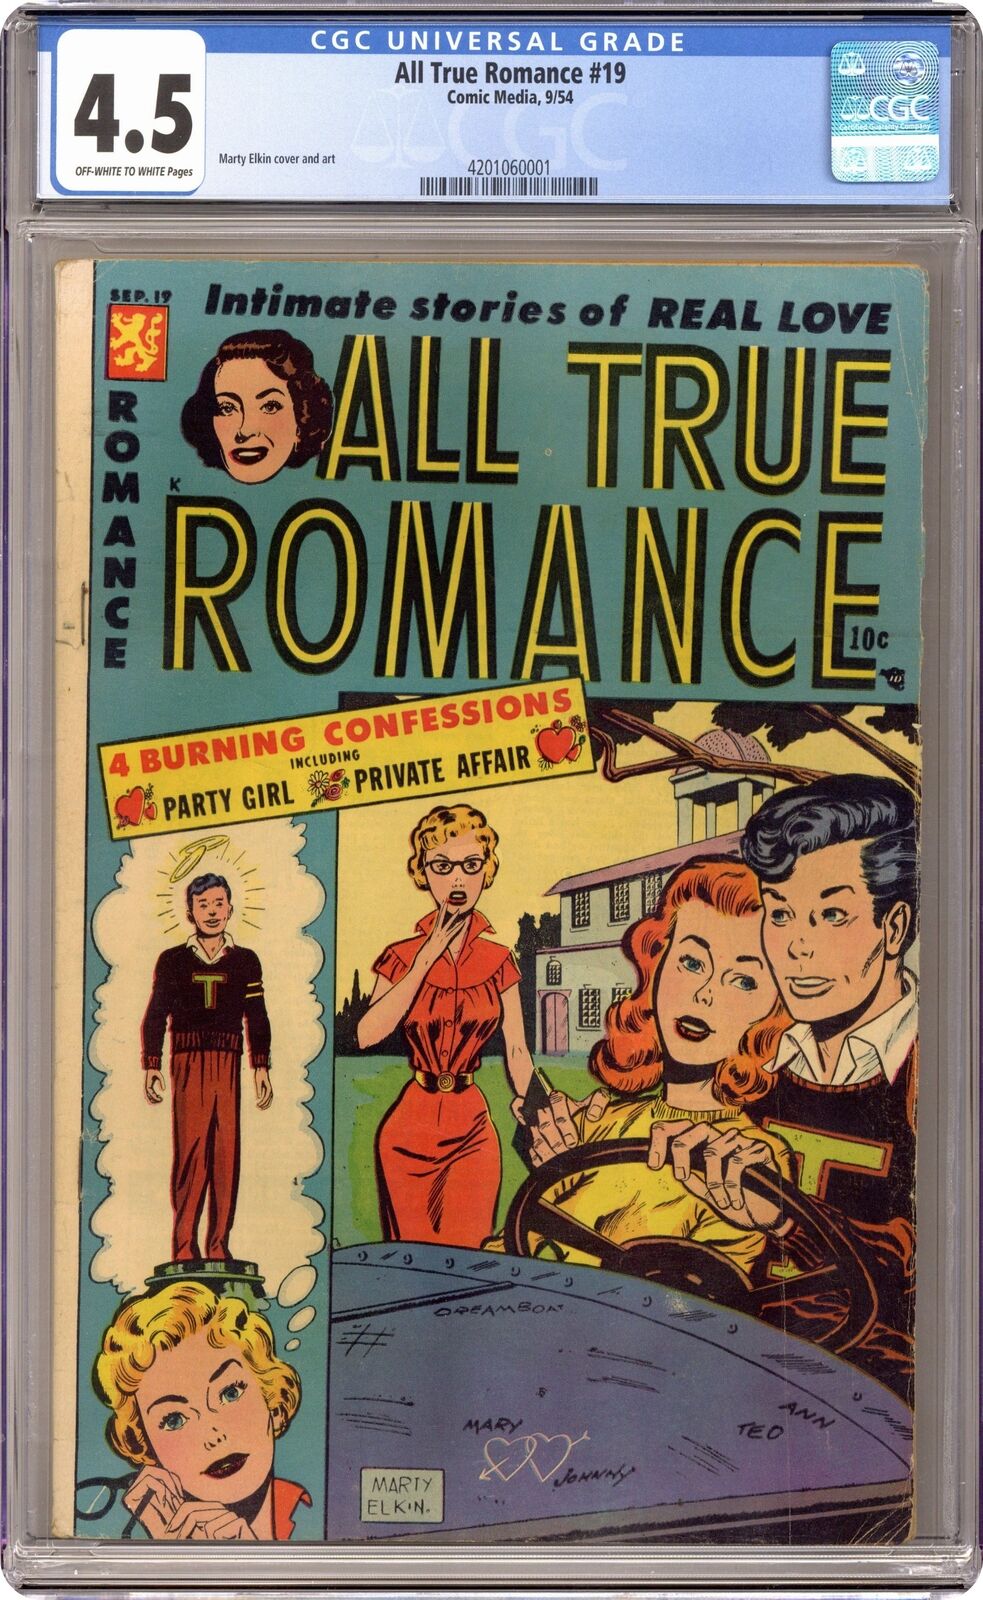 All True Romance #19 CGC 4.5 1954 4201060001